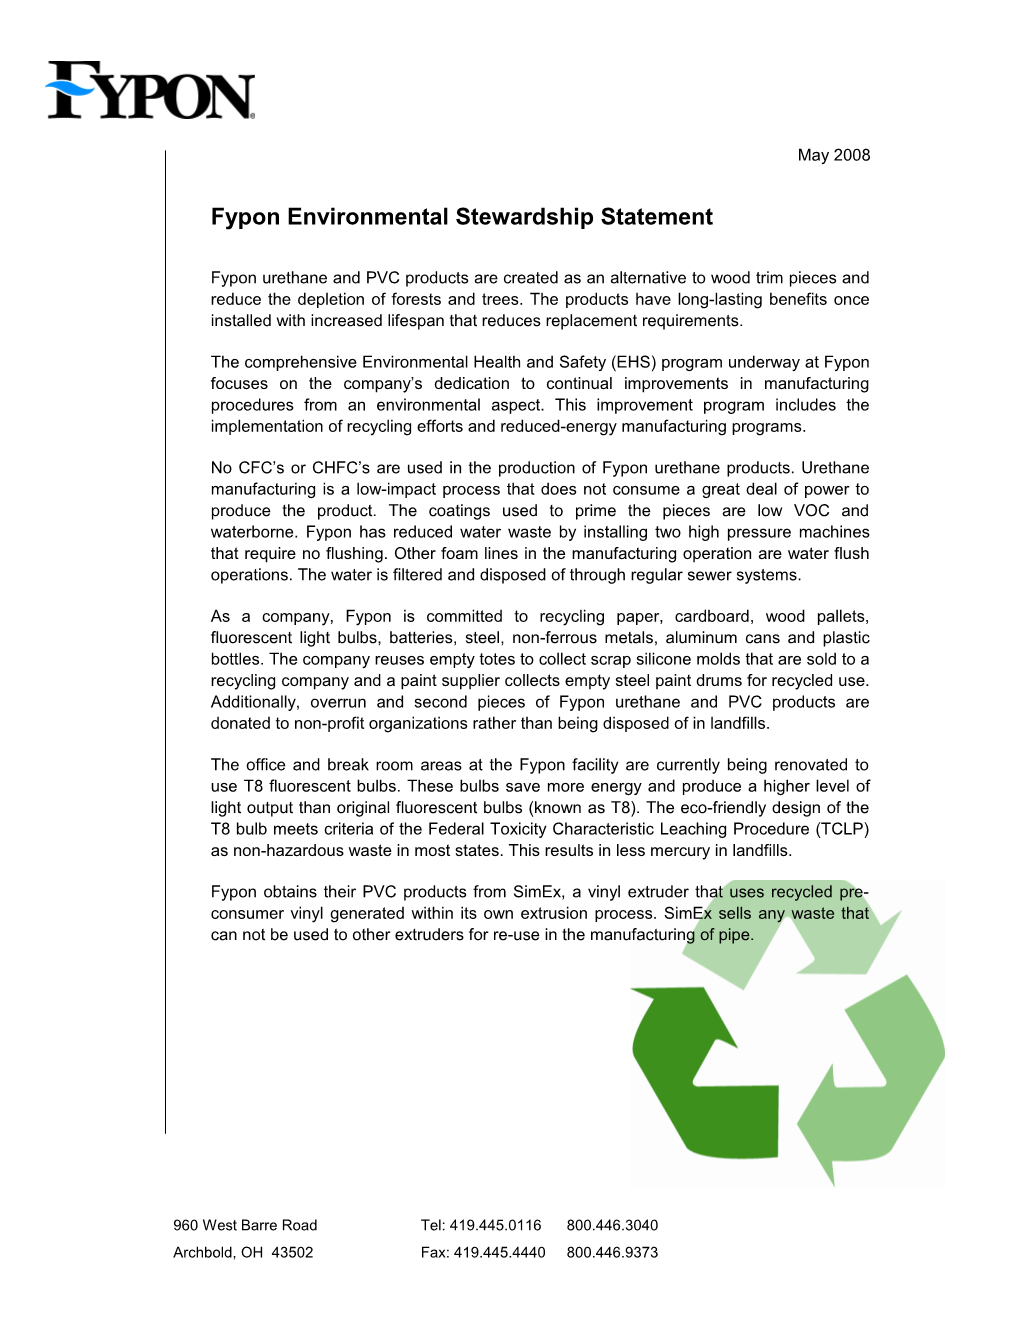 Fypon Environmental Stewardship Statement